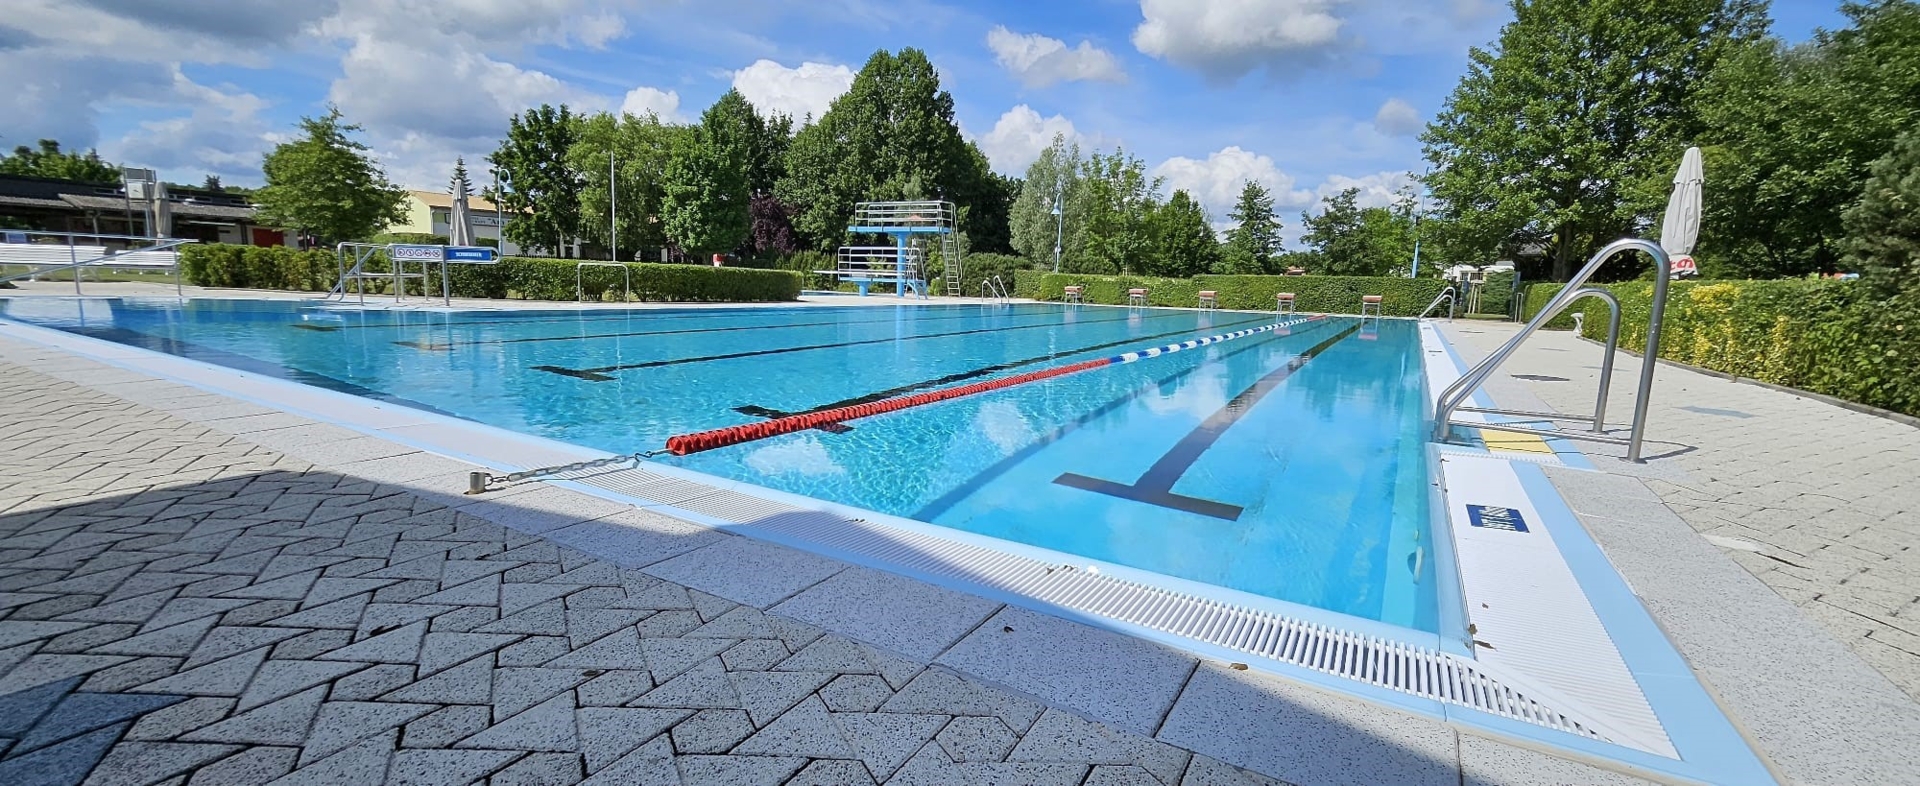 Freibad - Schwimmerbereich